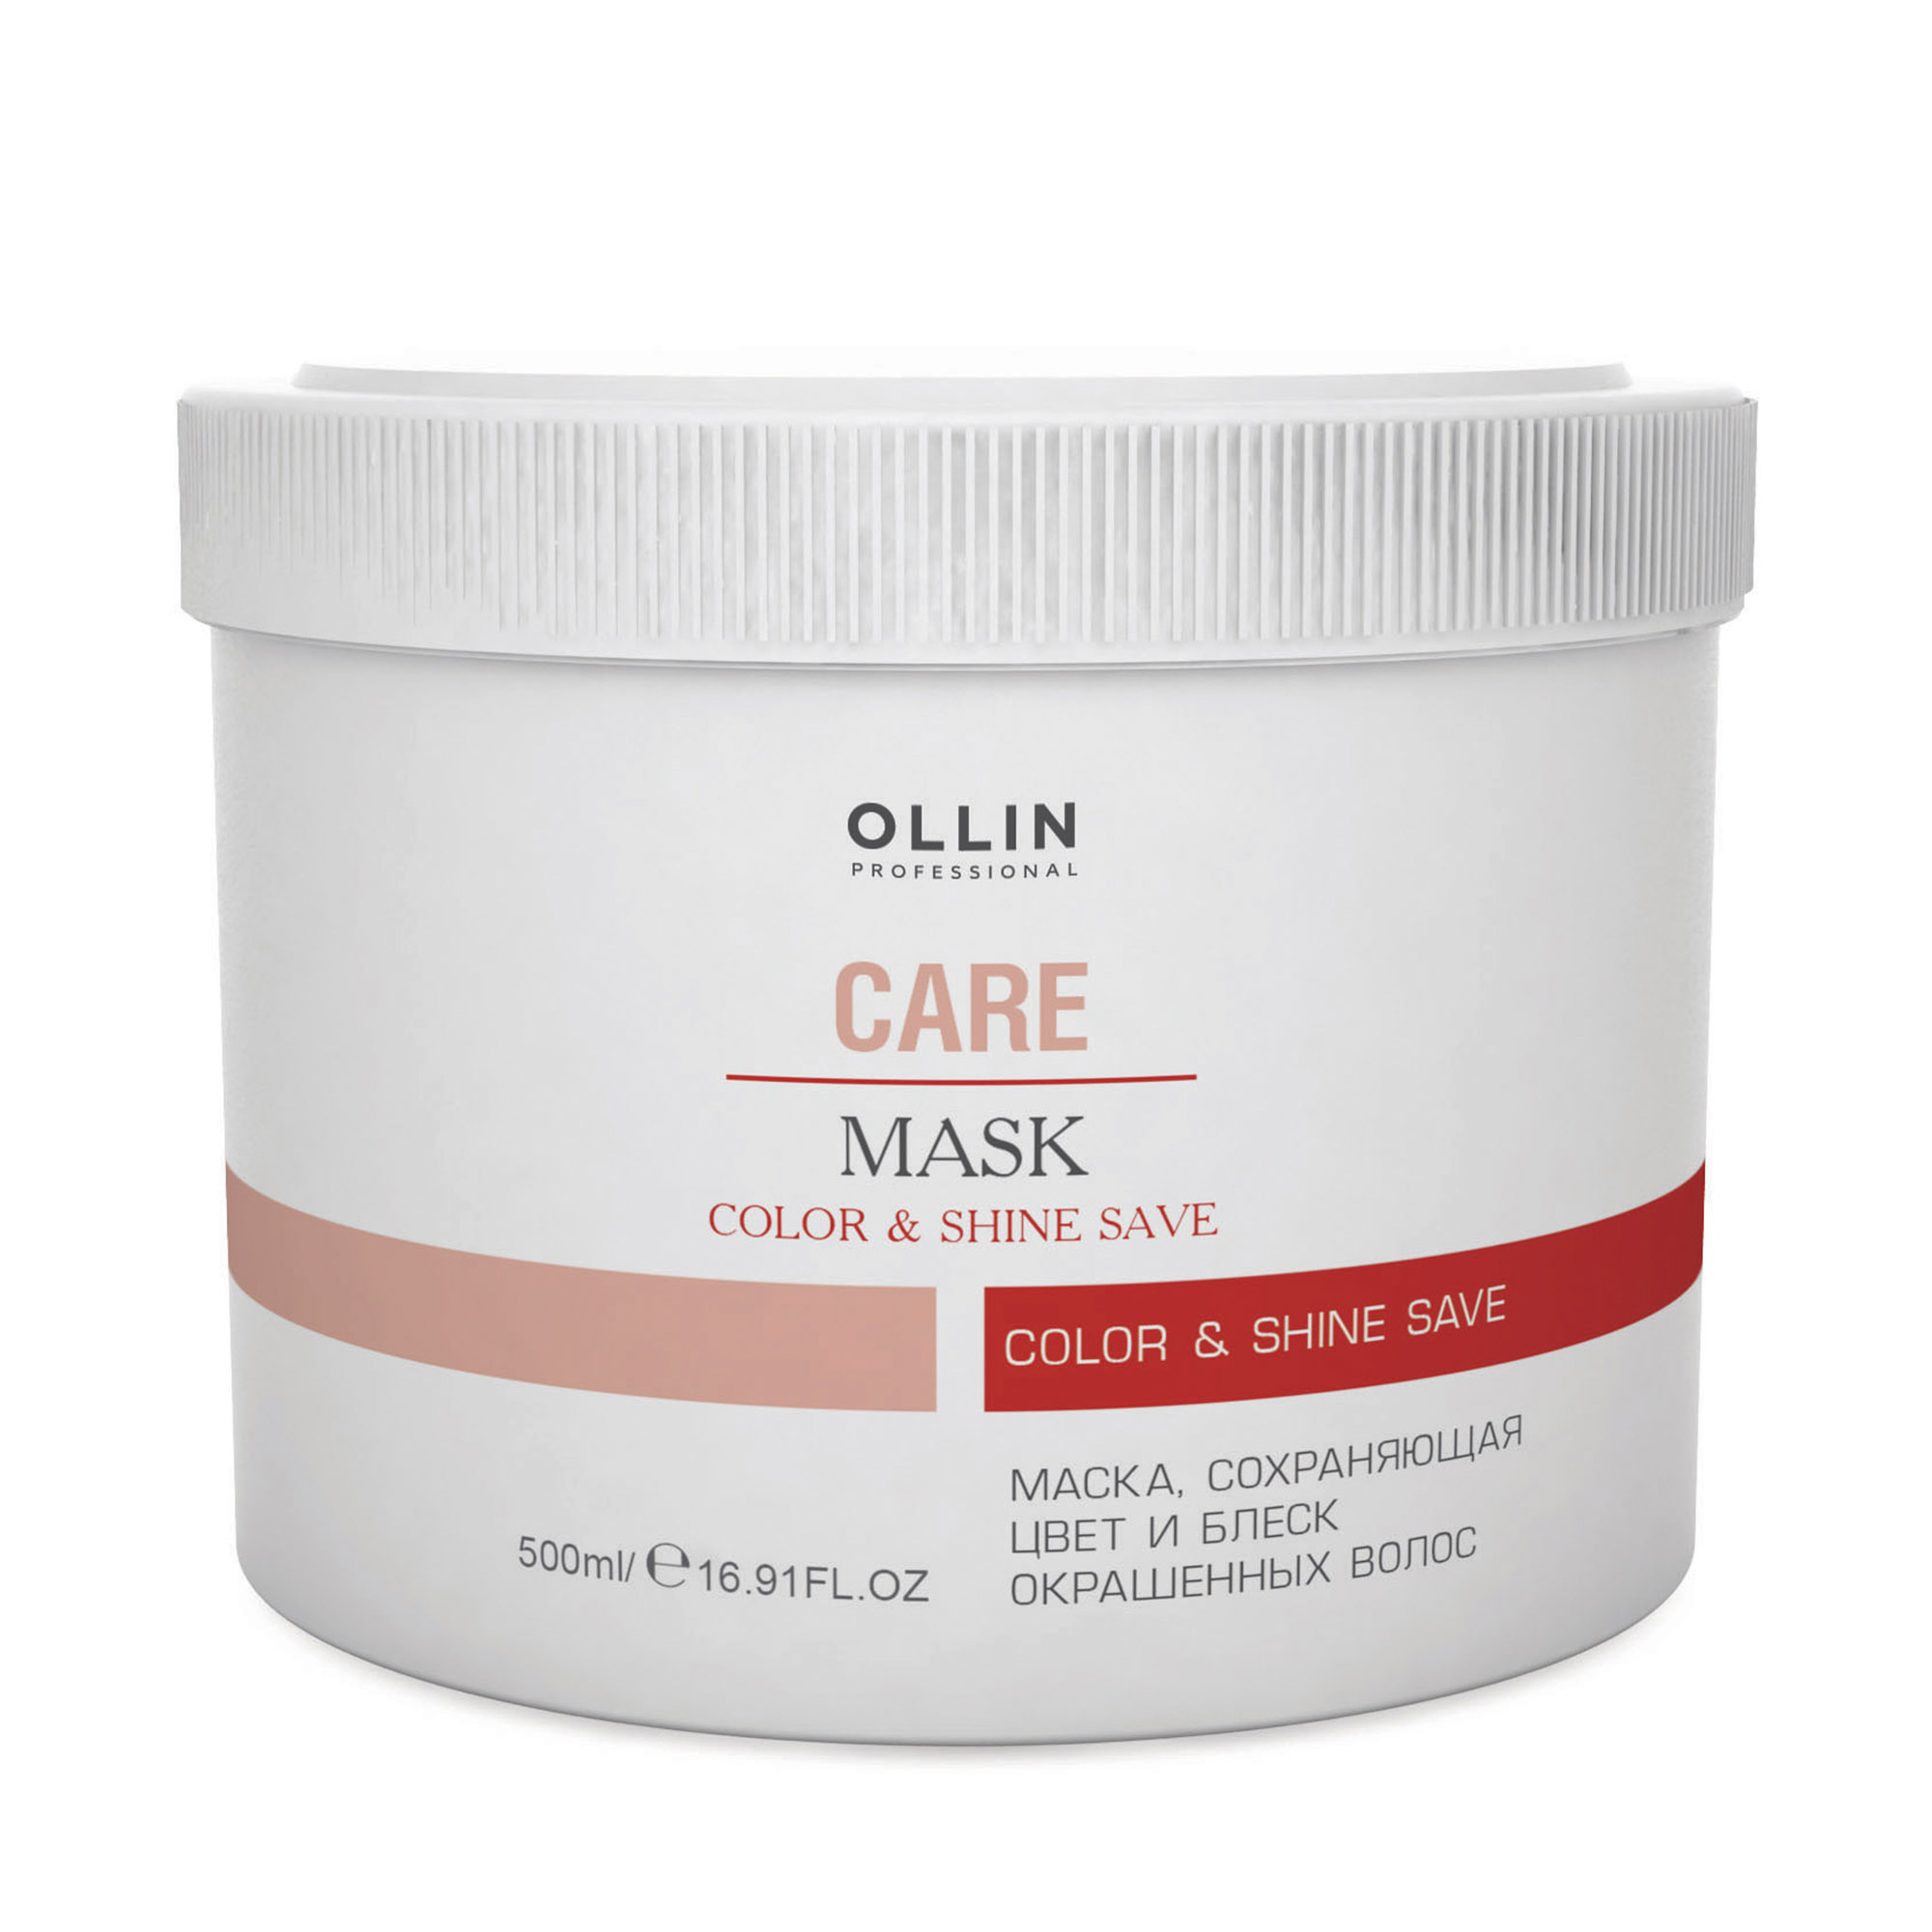 Маска Ollin Professional  Care Color and Shine Save сохраняющий цвет и блеск окрашенных волос 500 мл маска для волос традиционная дрожжевая банка 155 мл